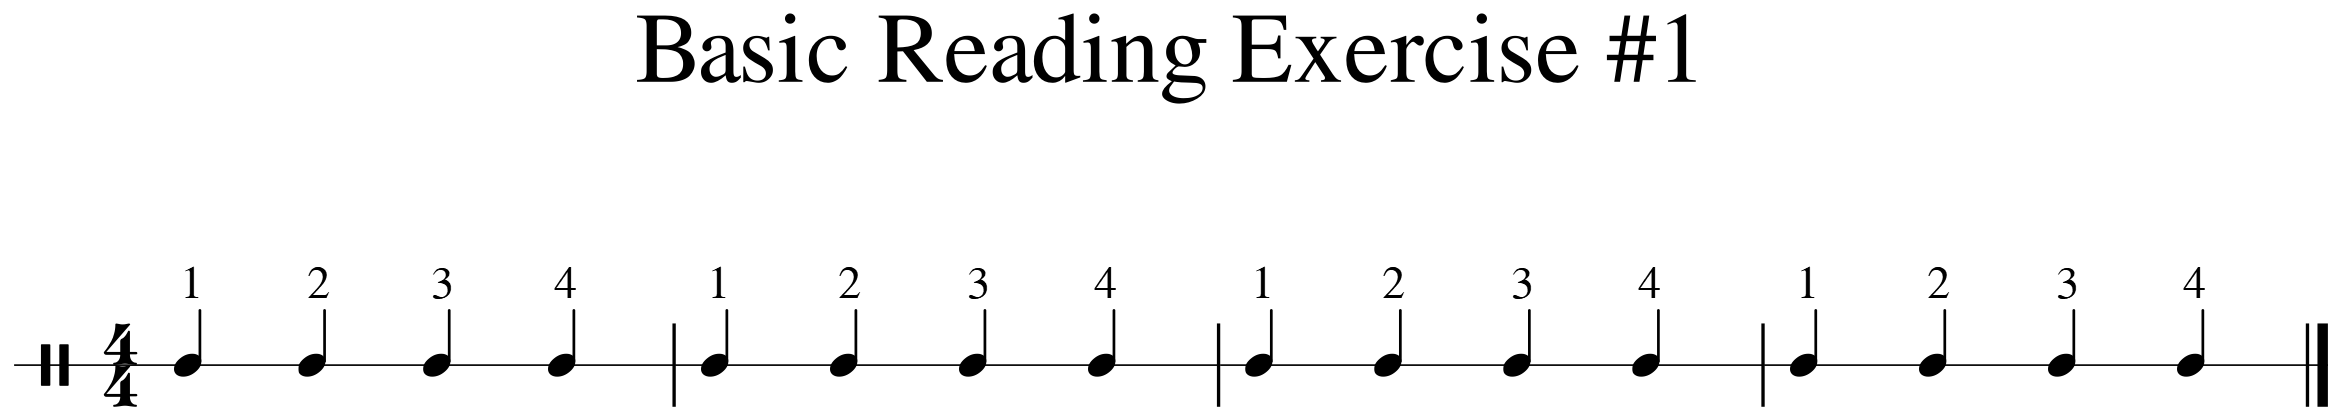 image of Basic Reading Exercise #1